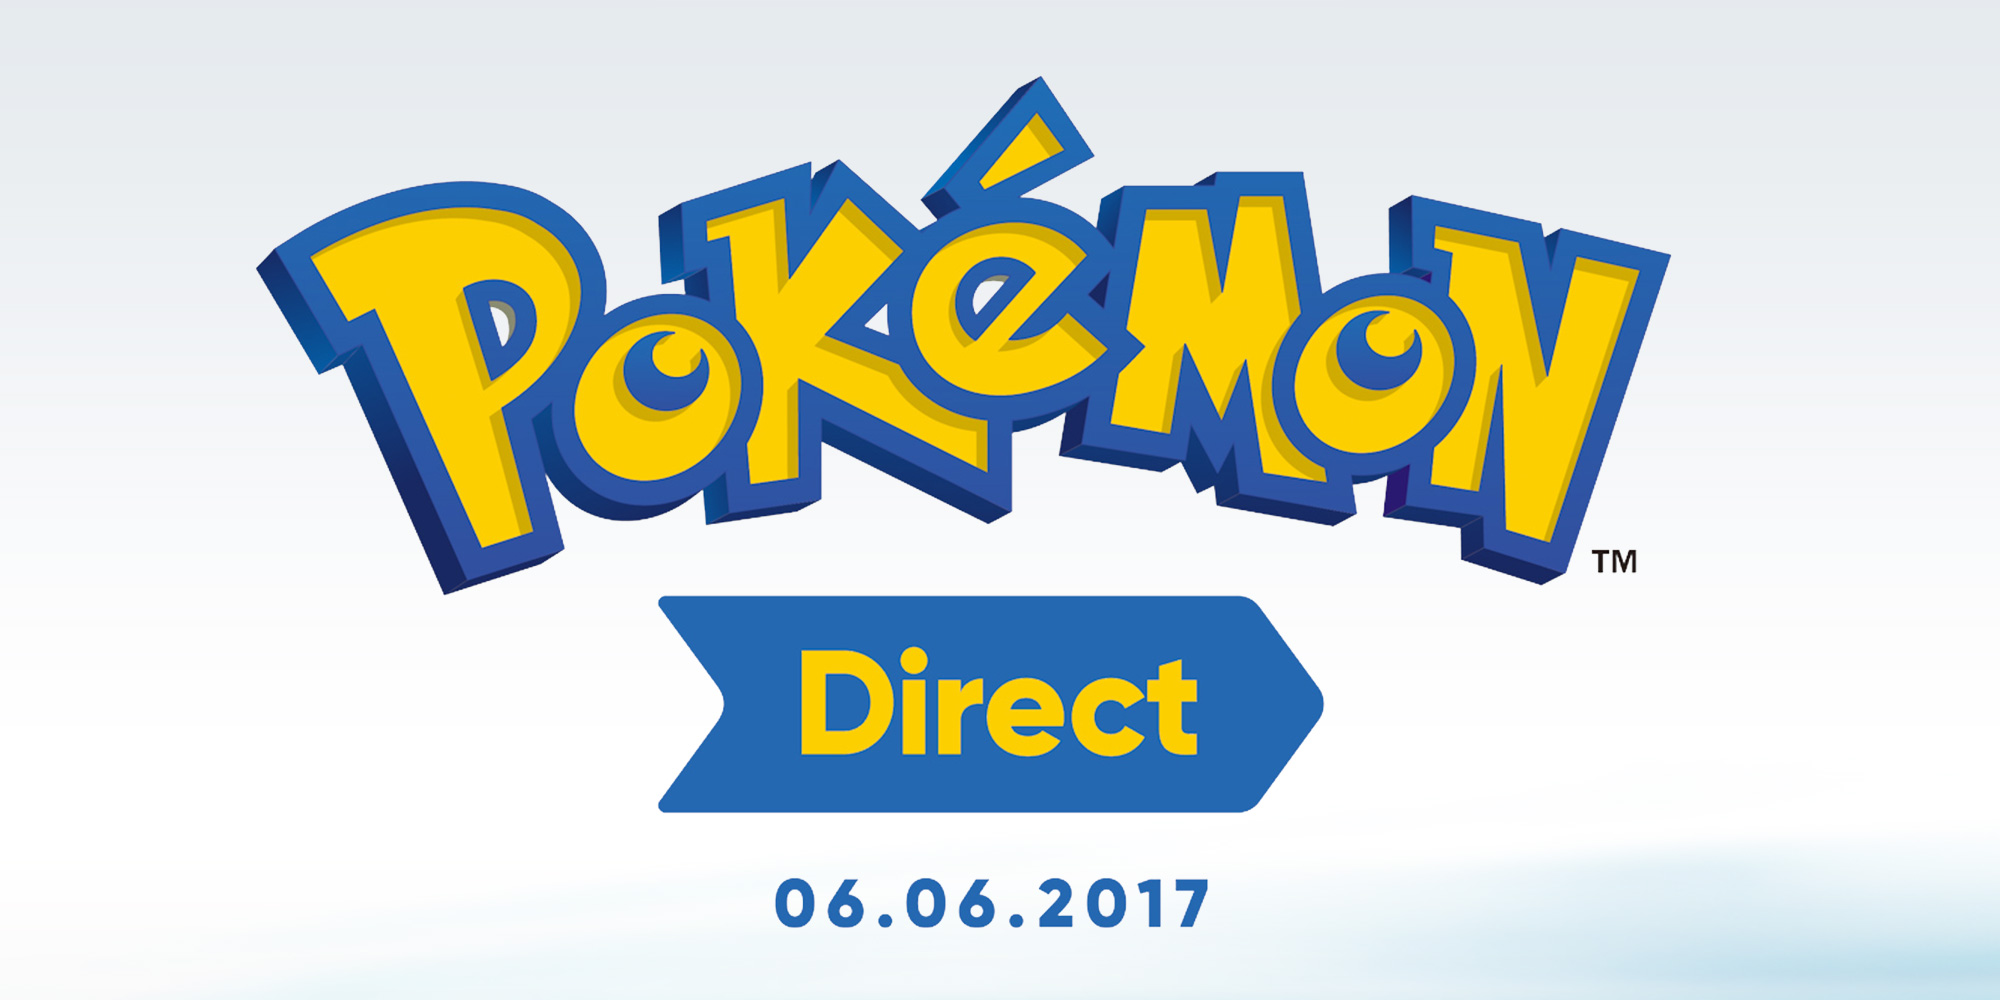 Uno speciale Direct dedicato ai Pokémon andrà in onda domani